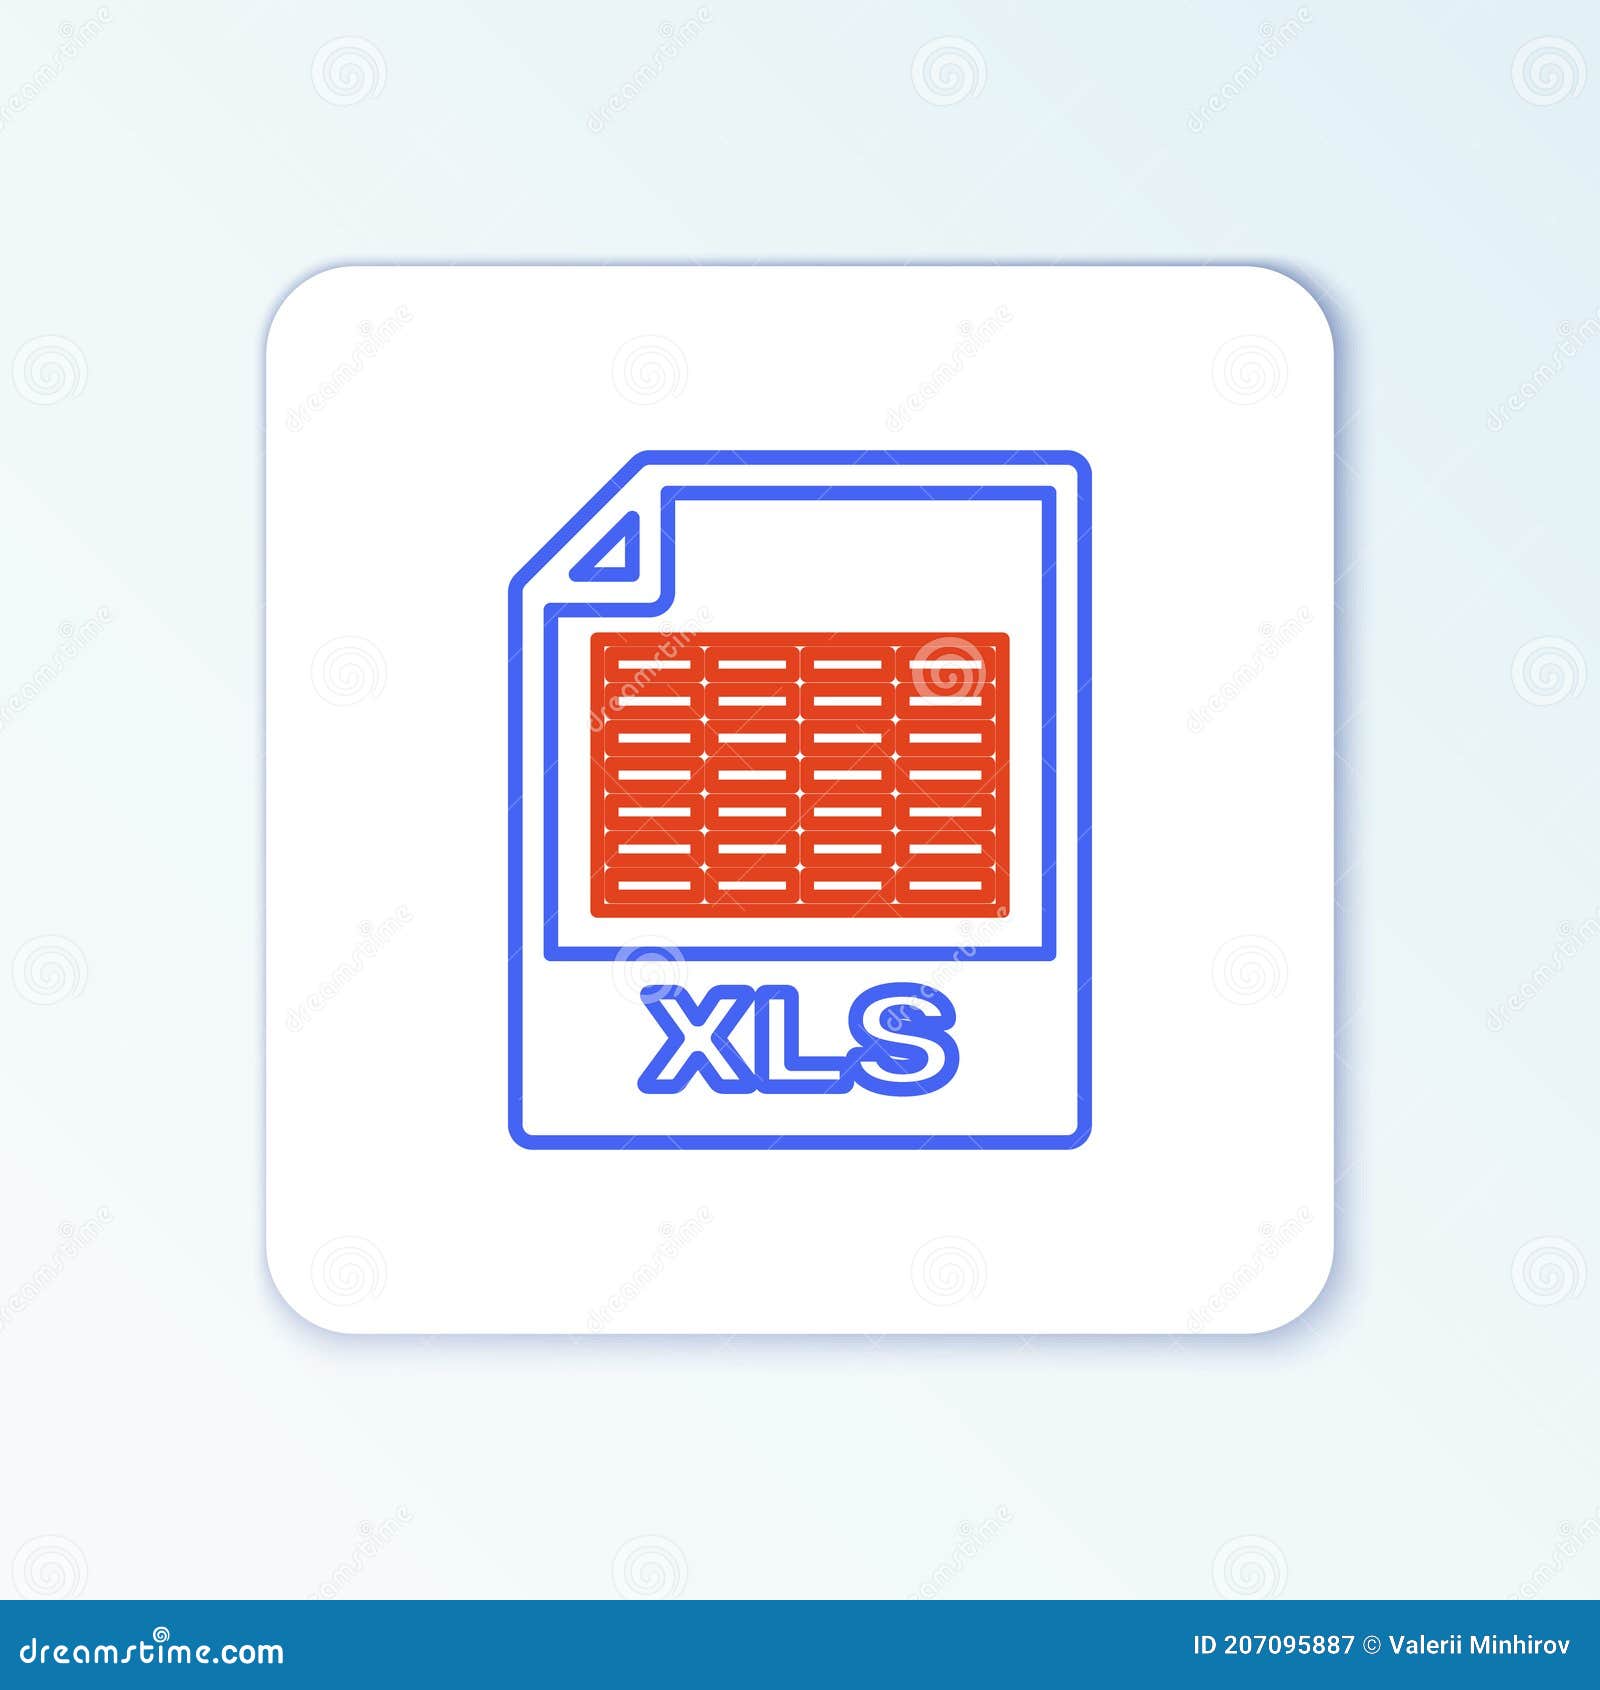 Để tiện lợi trong công việc, chúng tôi đã tạo ra một file XLS để tải về. Với file này, bạn có thể thu thập và quản lý thông tin một cách nhanh chóng và hiệu quả. Hãy xem hình ảnh để tải xuống file XLS.